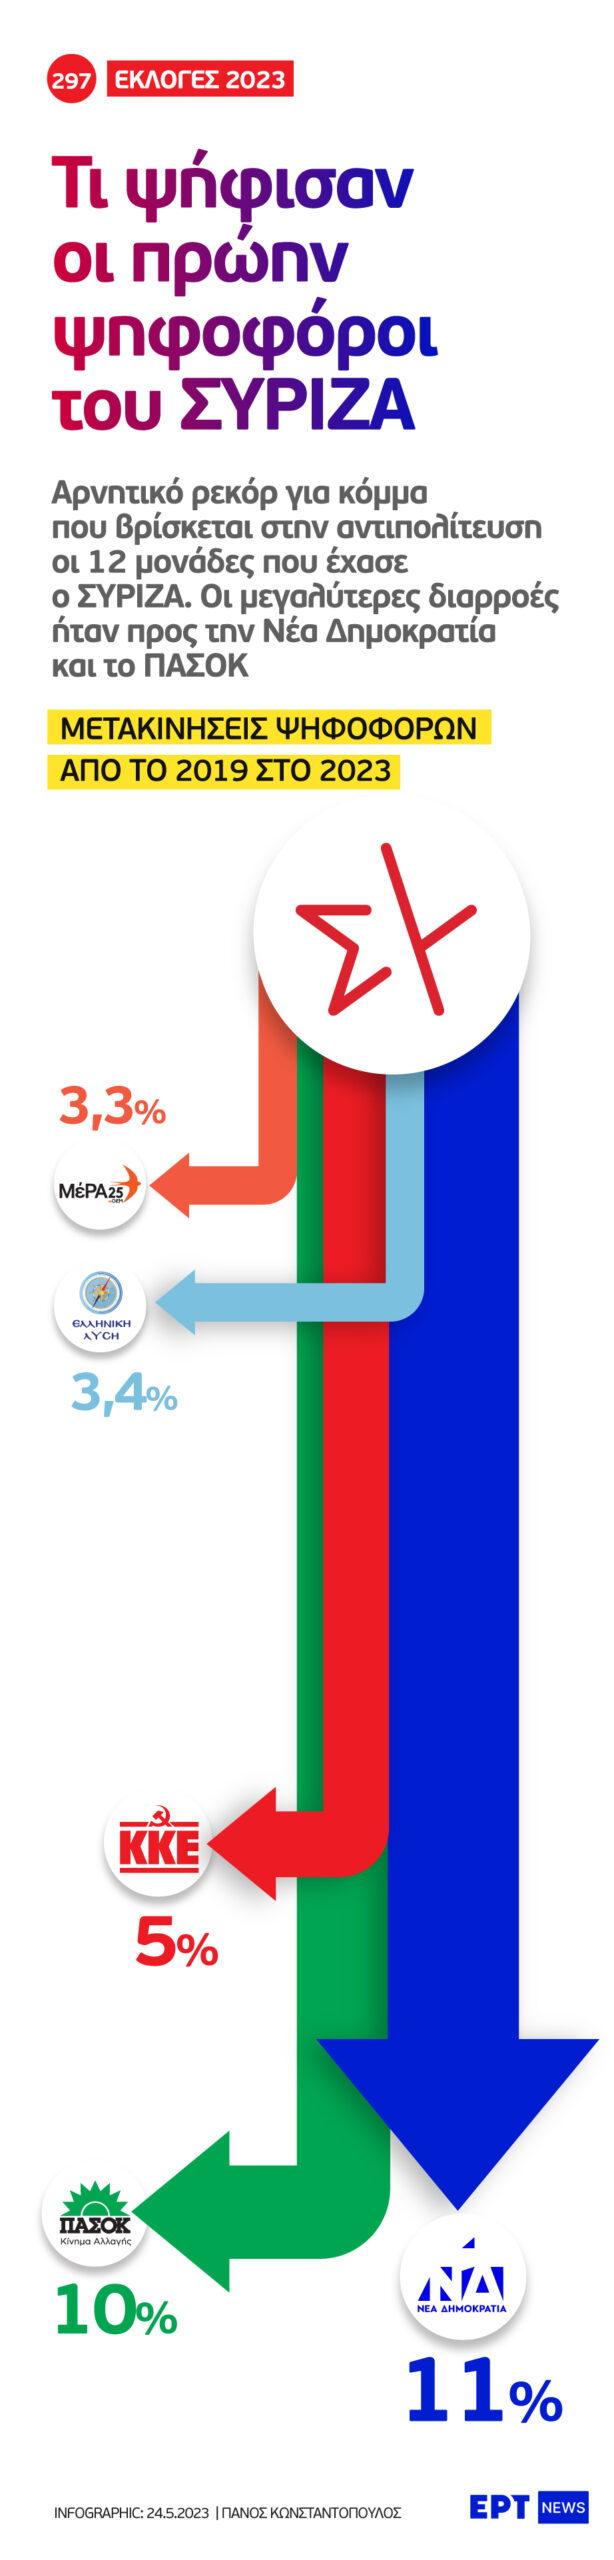 Infographic: Τι ψήφισαν οι πρώην ψηφοφόροι του ΣΥΡΙΖΑ